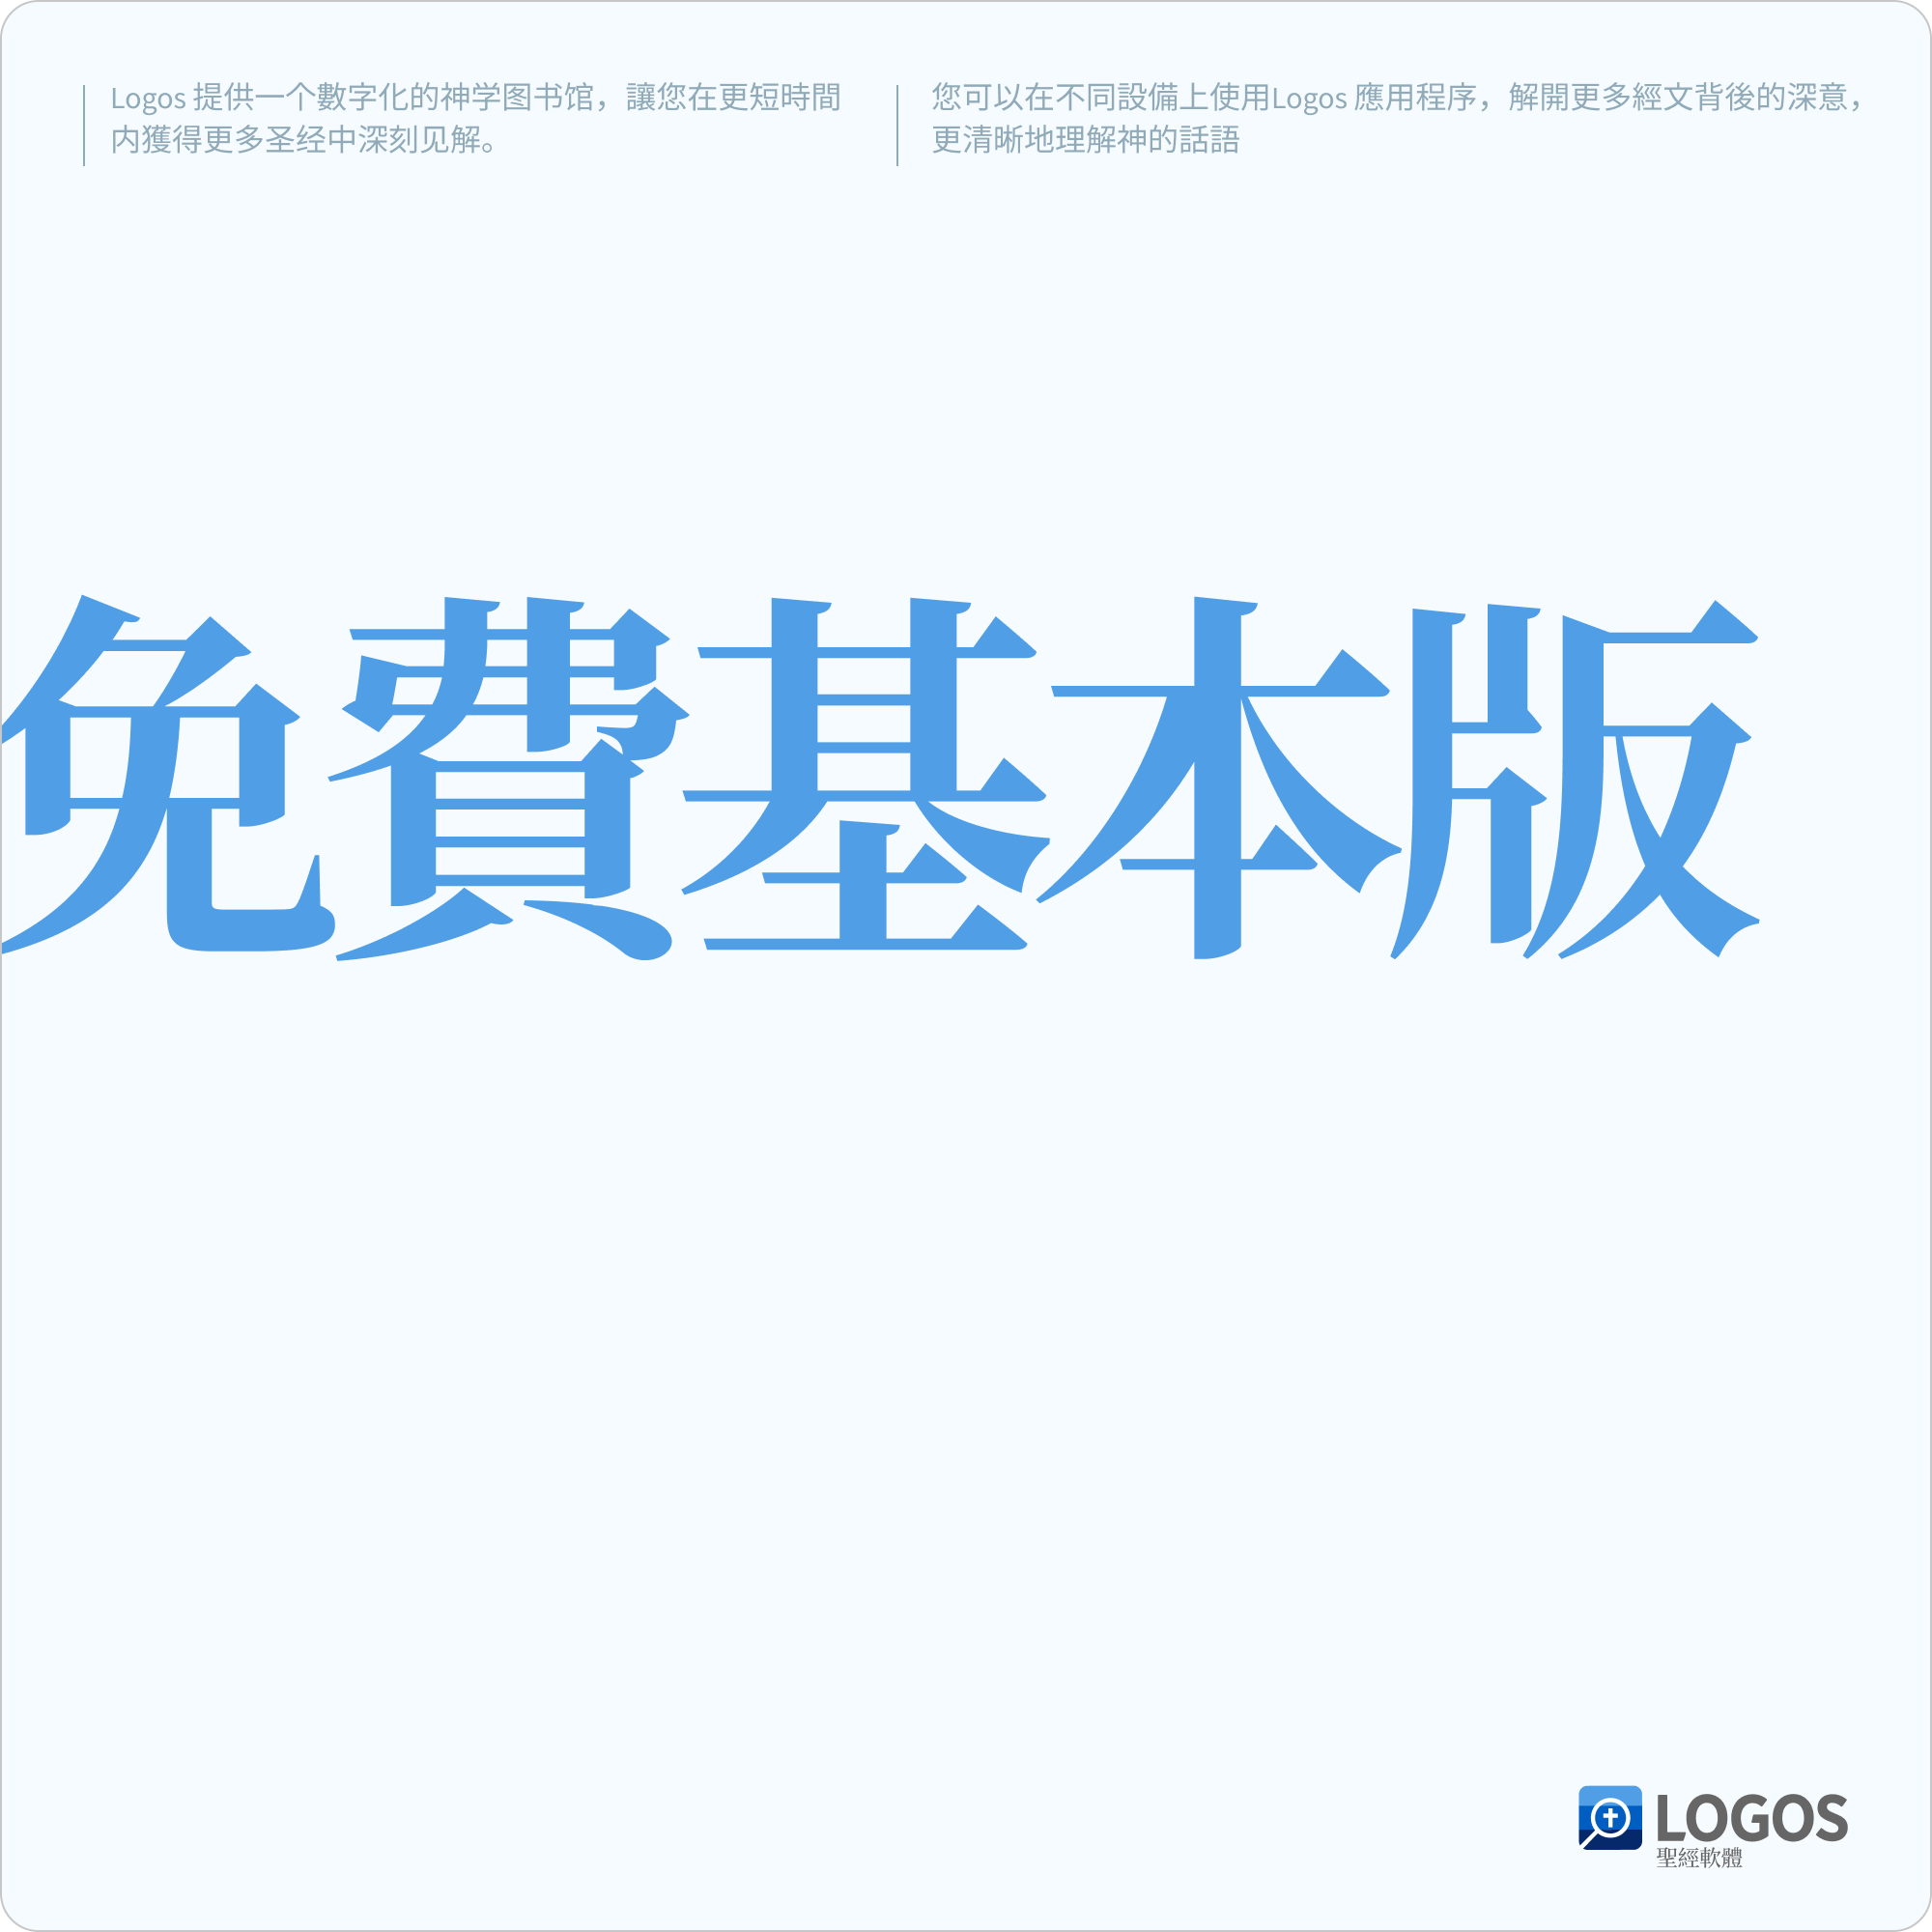 Logos 中文免費基本版